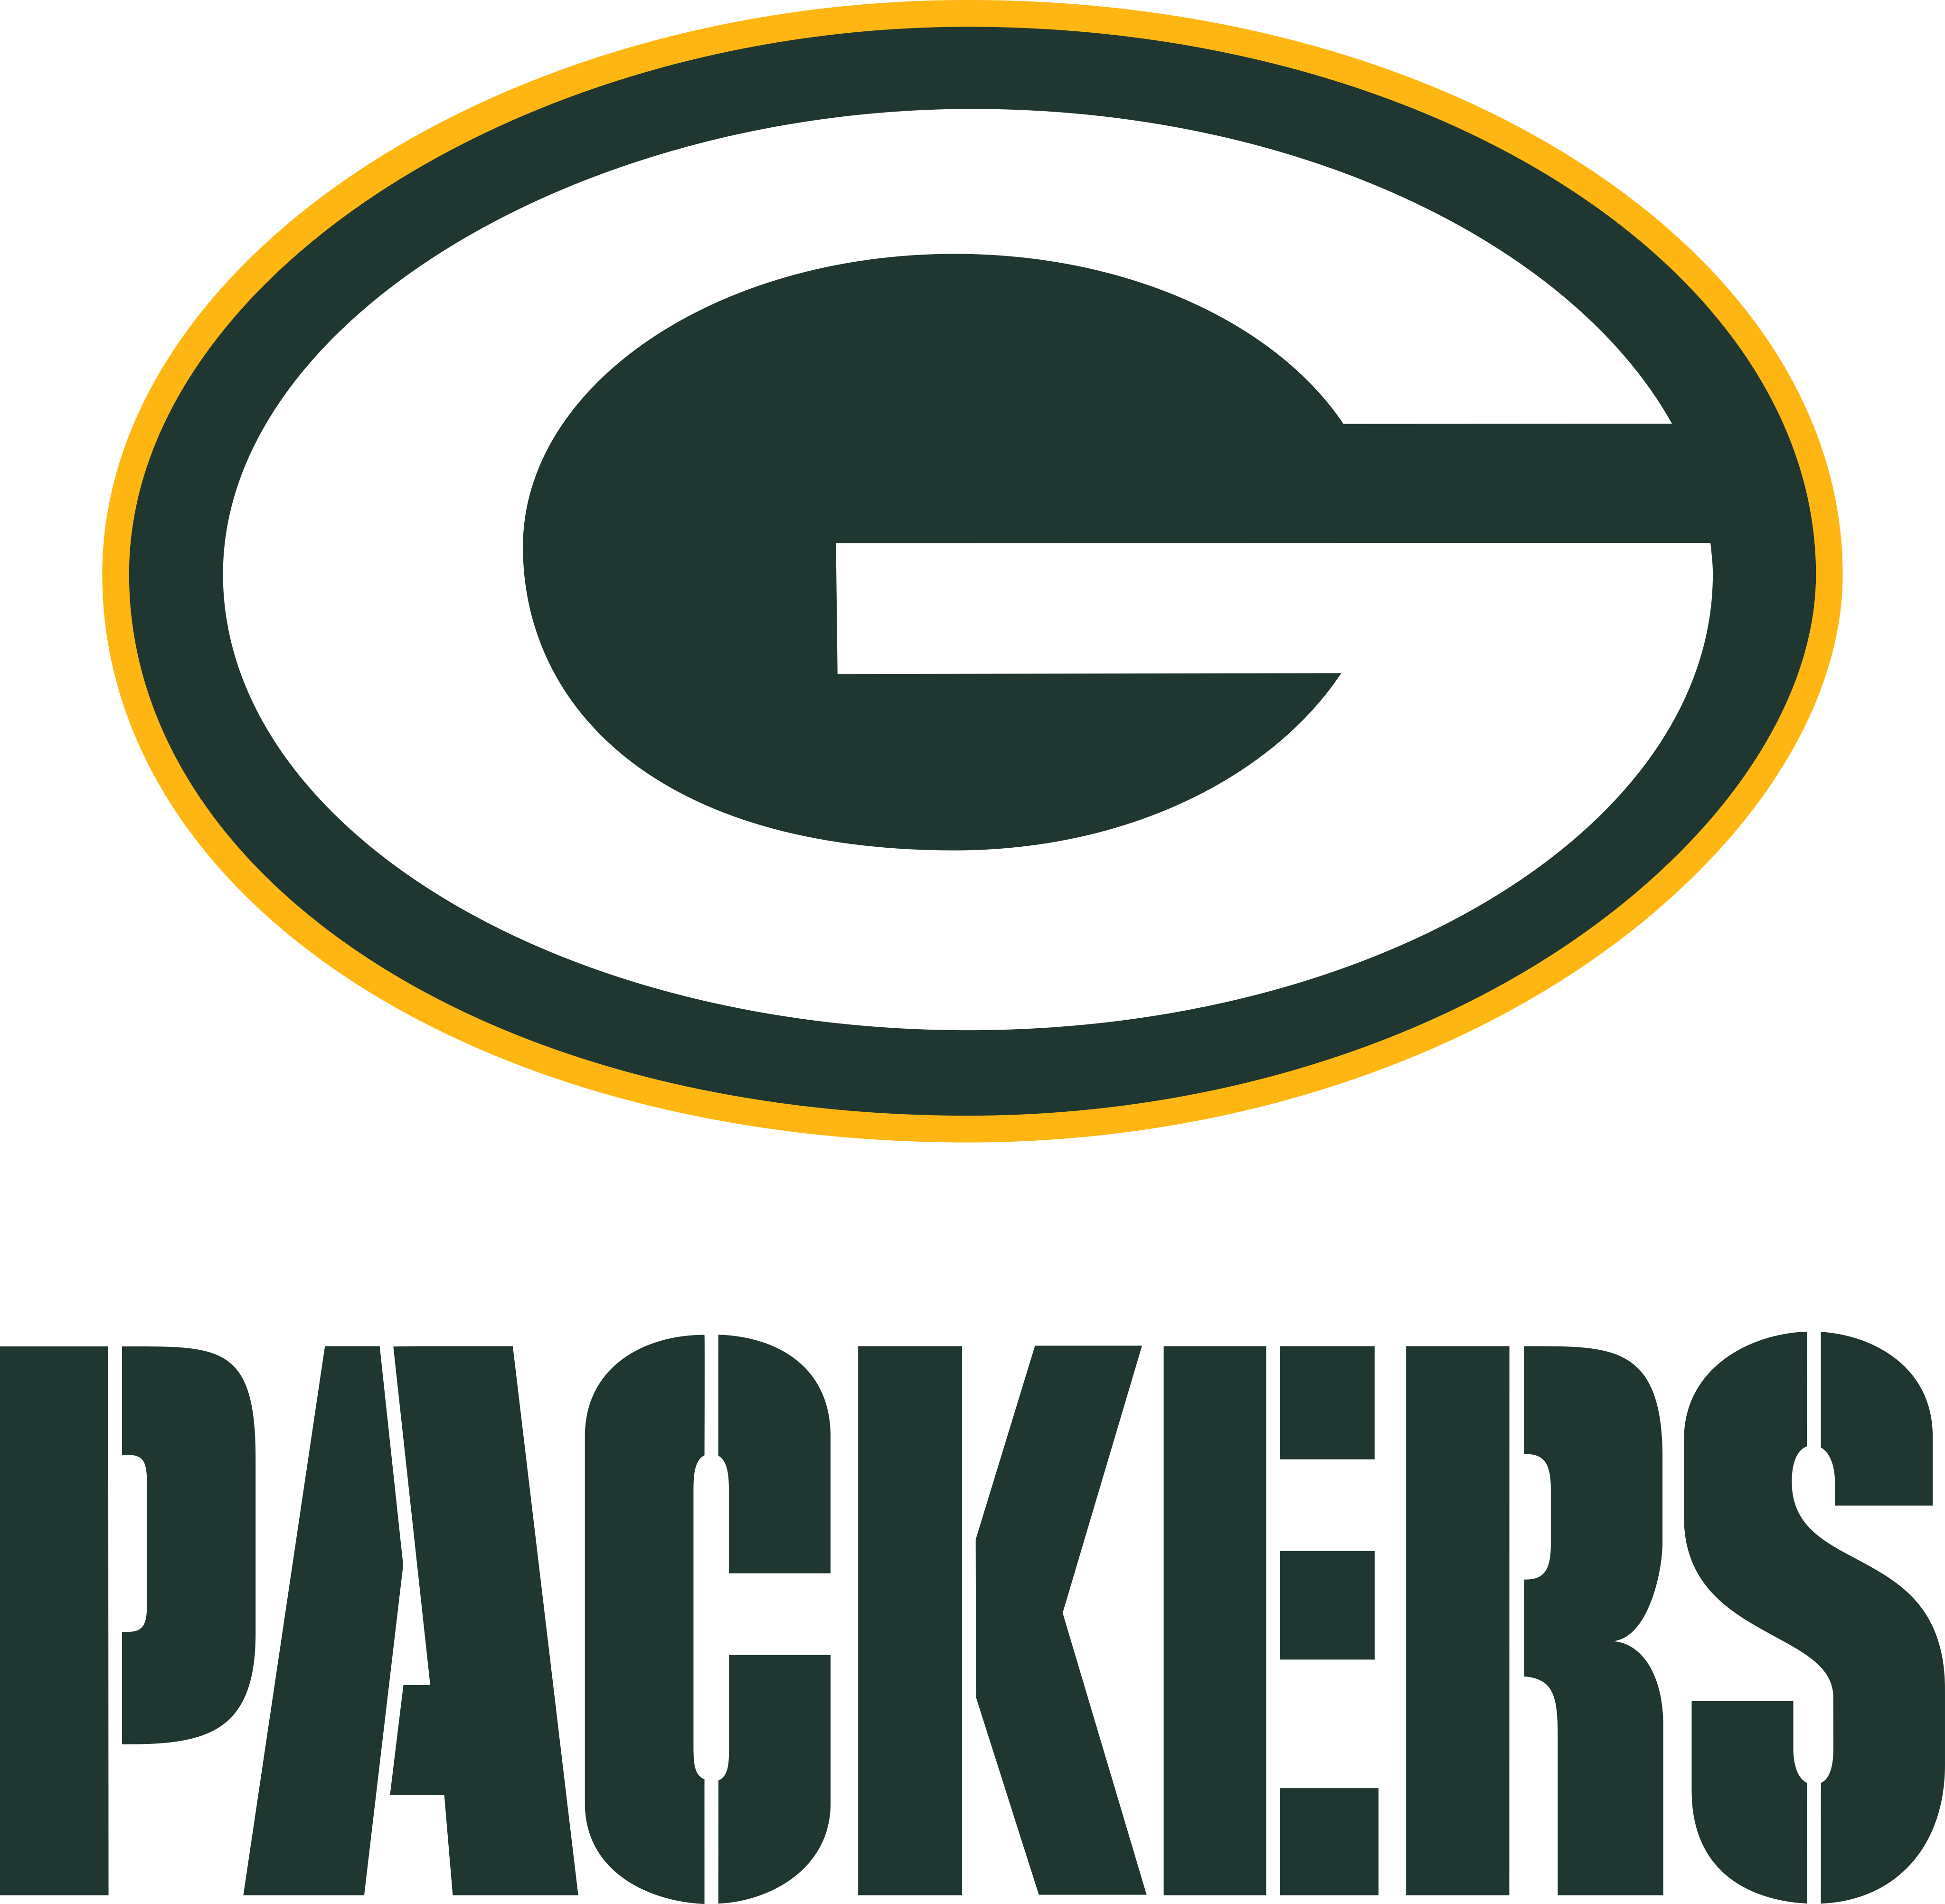 green bay packers logo - Green Bay Packers Logo